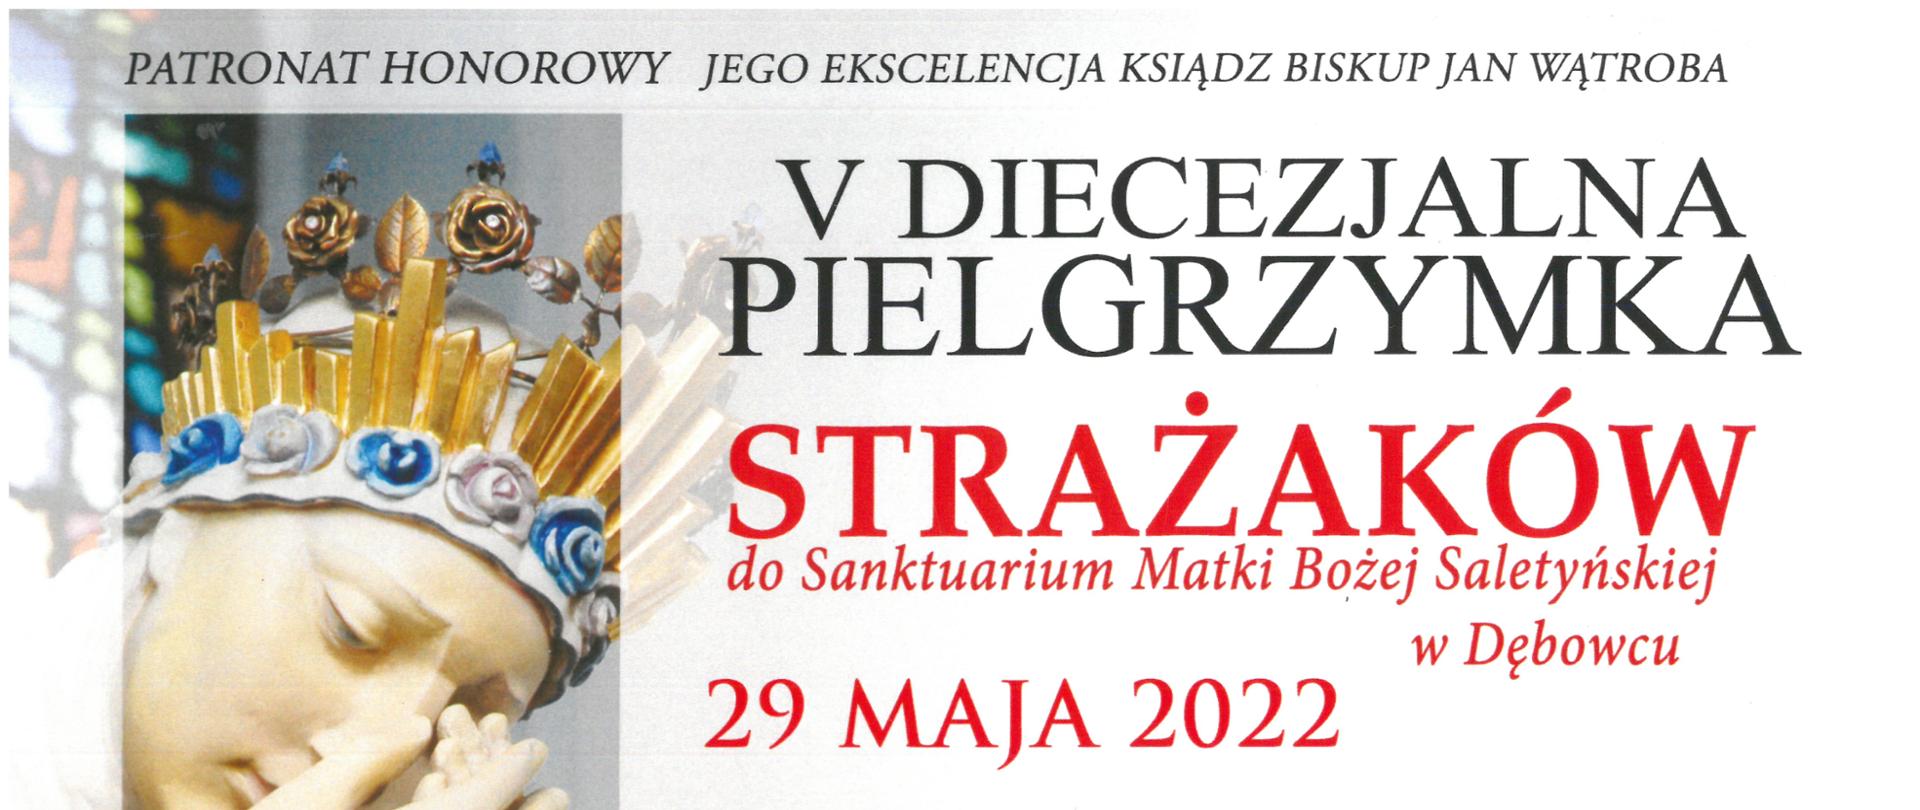 Plakat informujący o pielgrzymce do Sanktuarium w Dębowcu